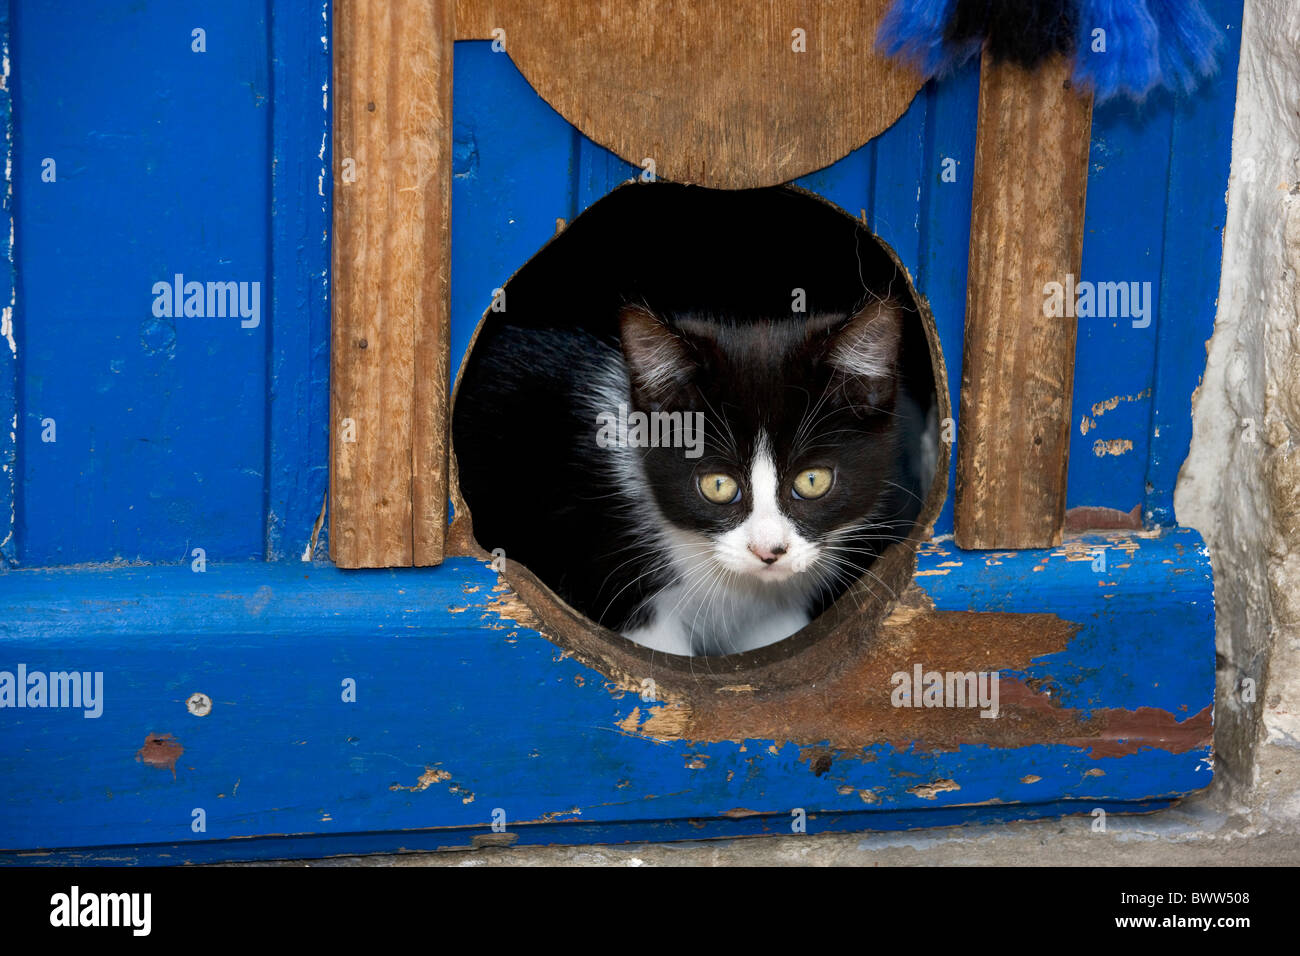 Curioso gato doméstico (Felis catus) mirando a través de gato en la puerta batiente Foto de stock